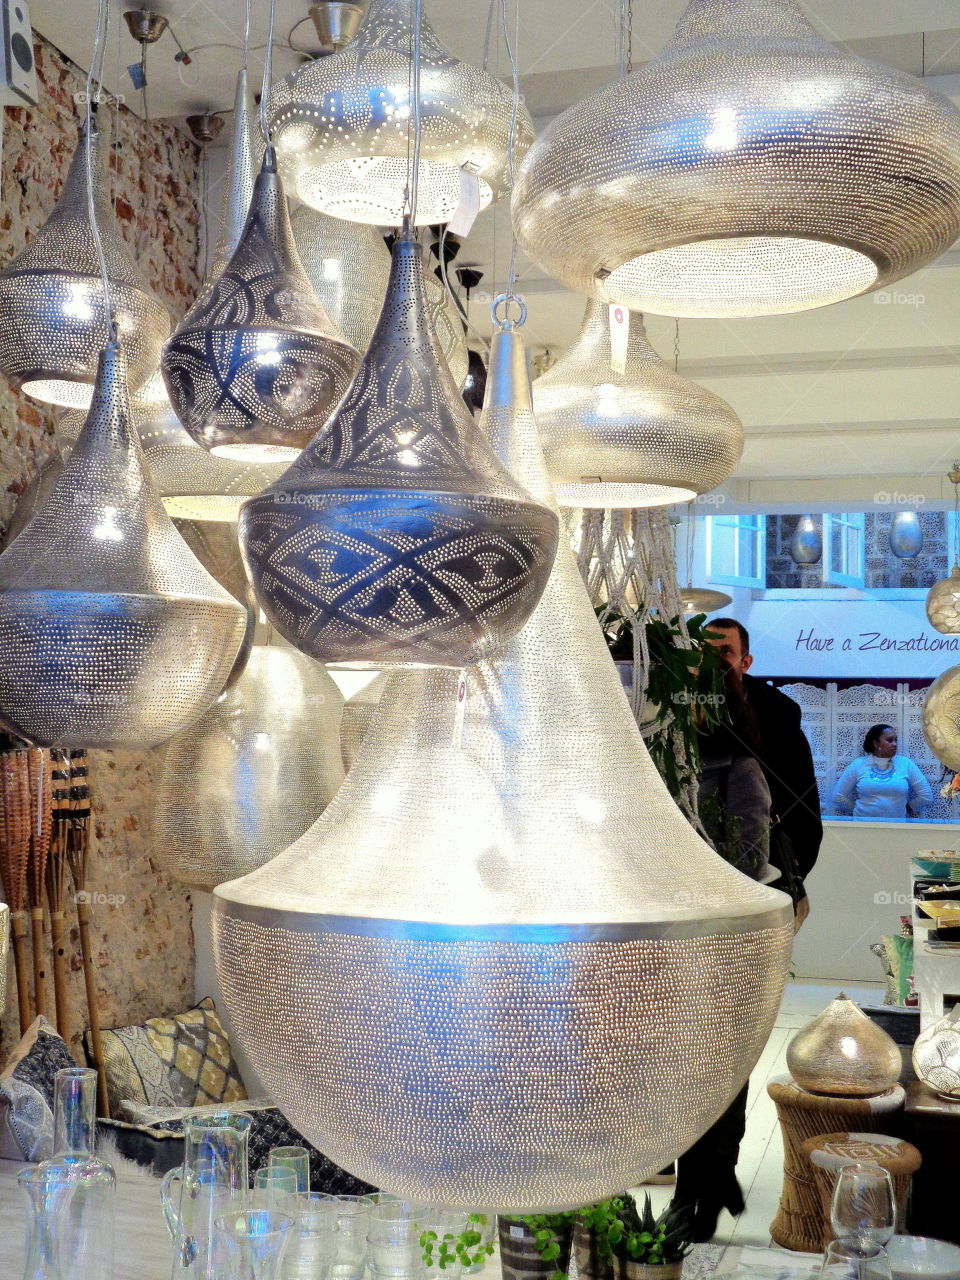 Beautiful lamp display as seen in Amsterdam lamp shop